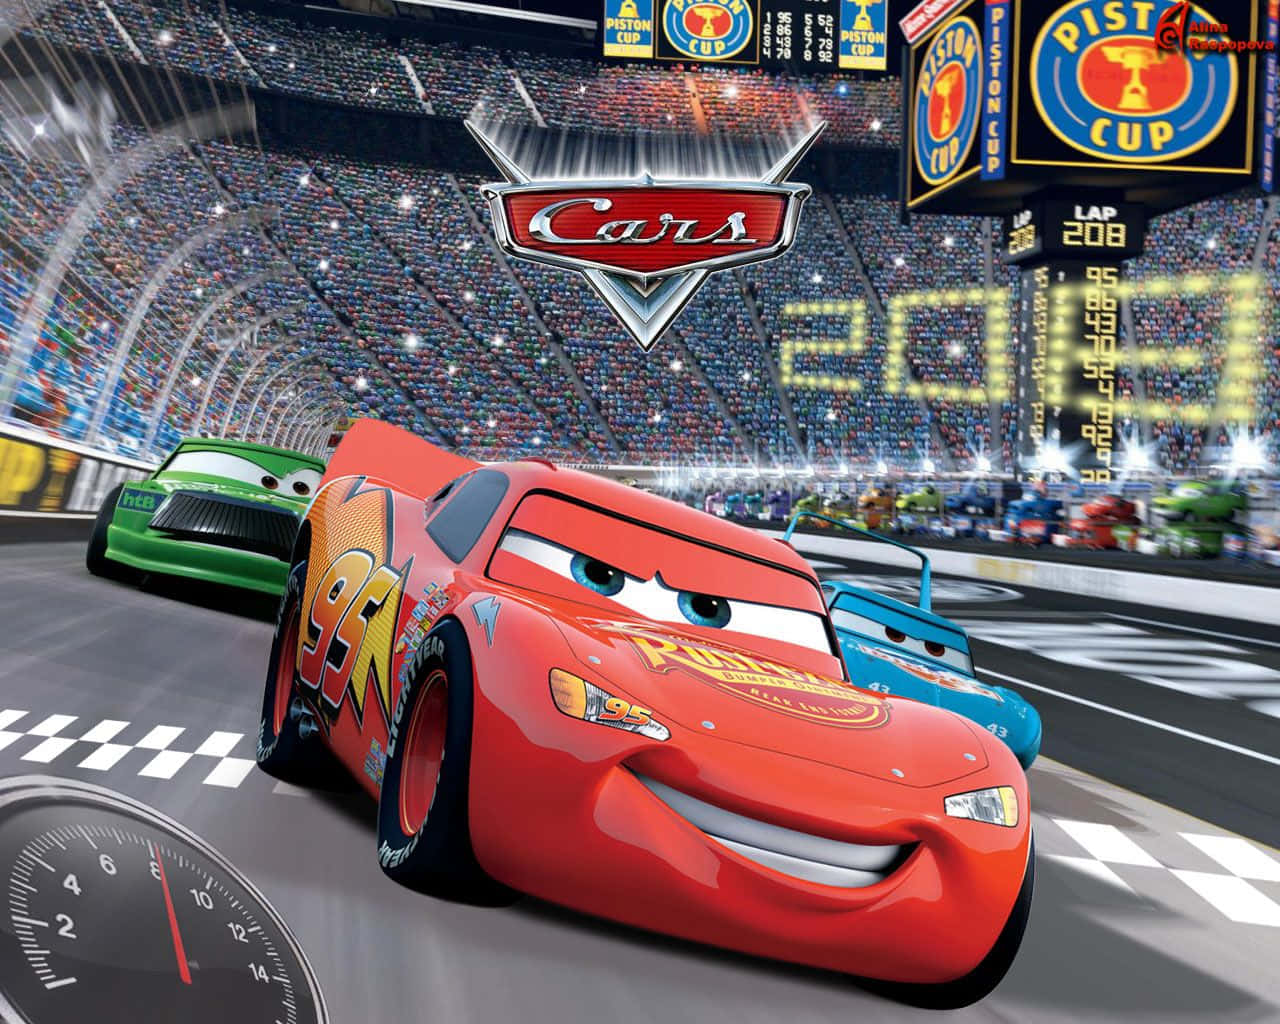 Disneycars Kører Racerløb I Et Stadion.